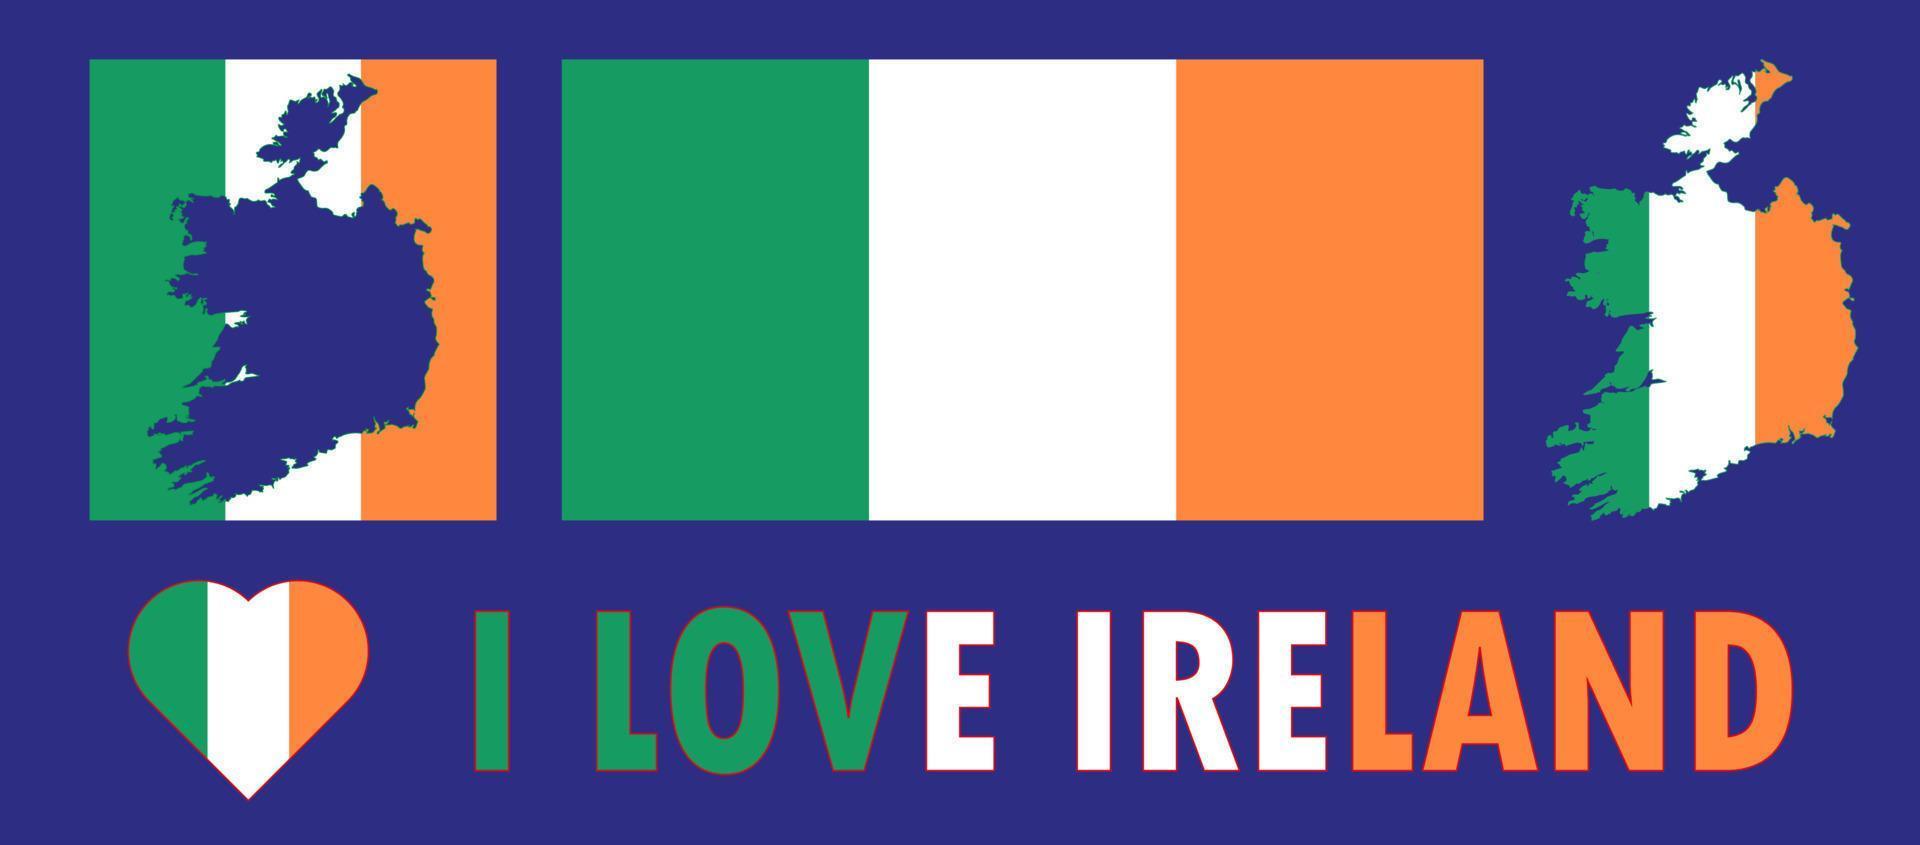 reeks van vector illustraties met Ierland vlag, land schets kaart en hart. reizen concept.